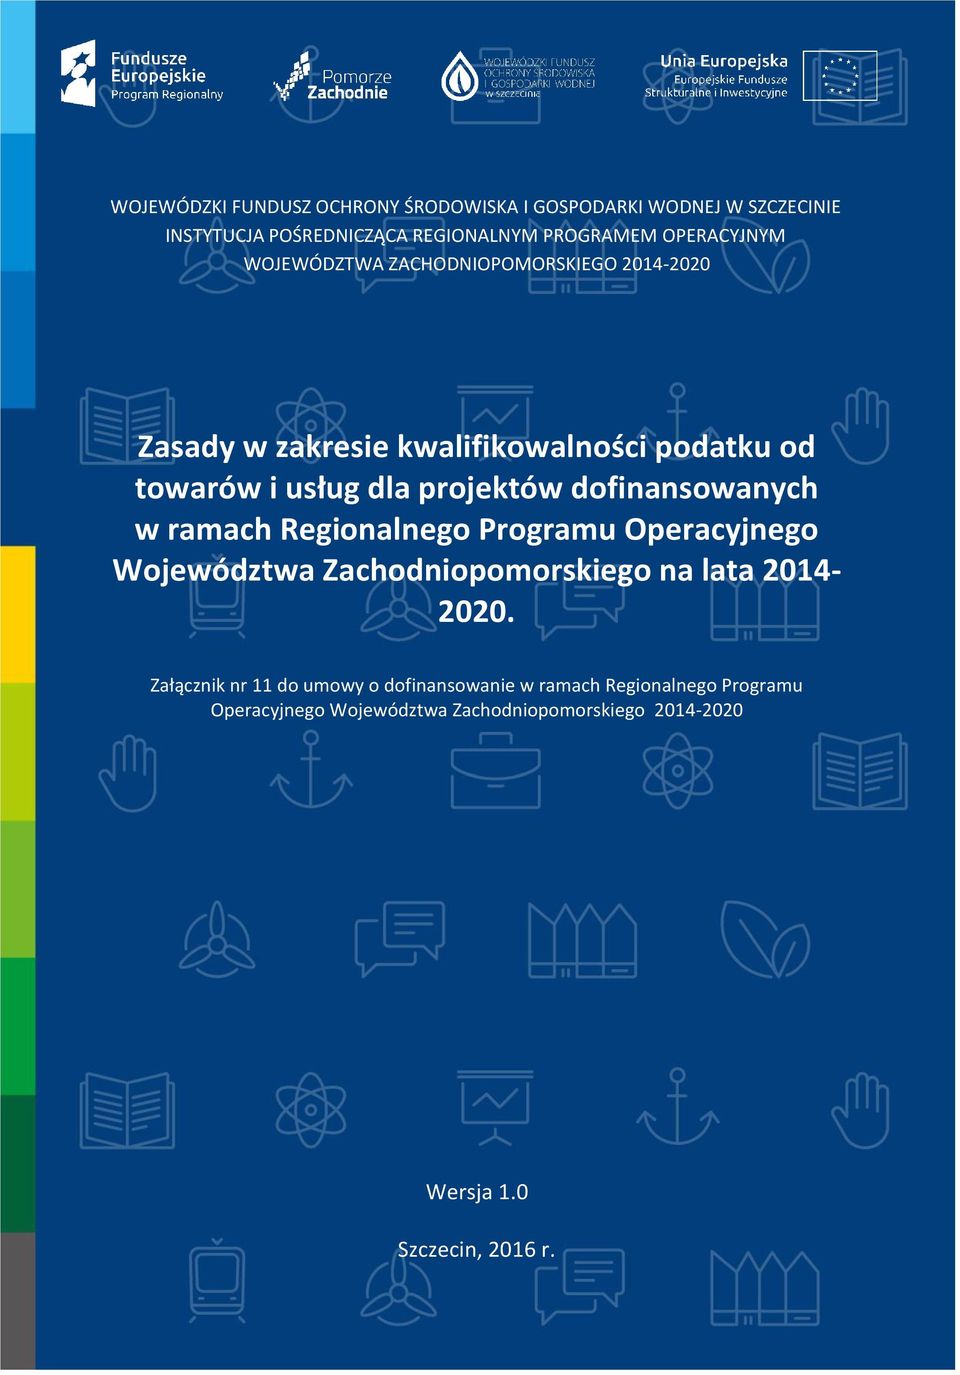 dofinansowanych w ramach Regionalnego Programu Operacyjnego Województwa Zachodniopomorskiego na lata 2014-2020.